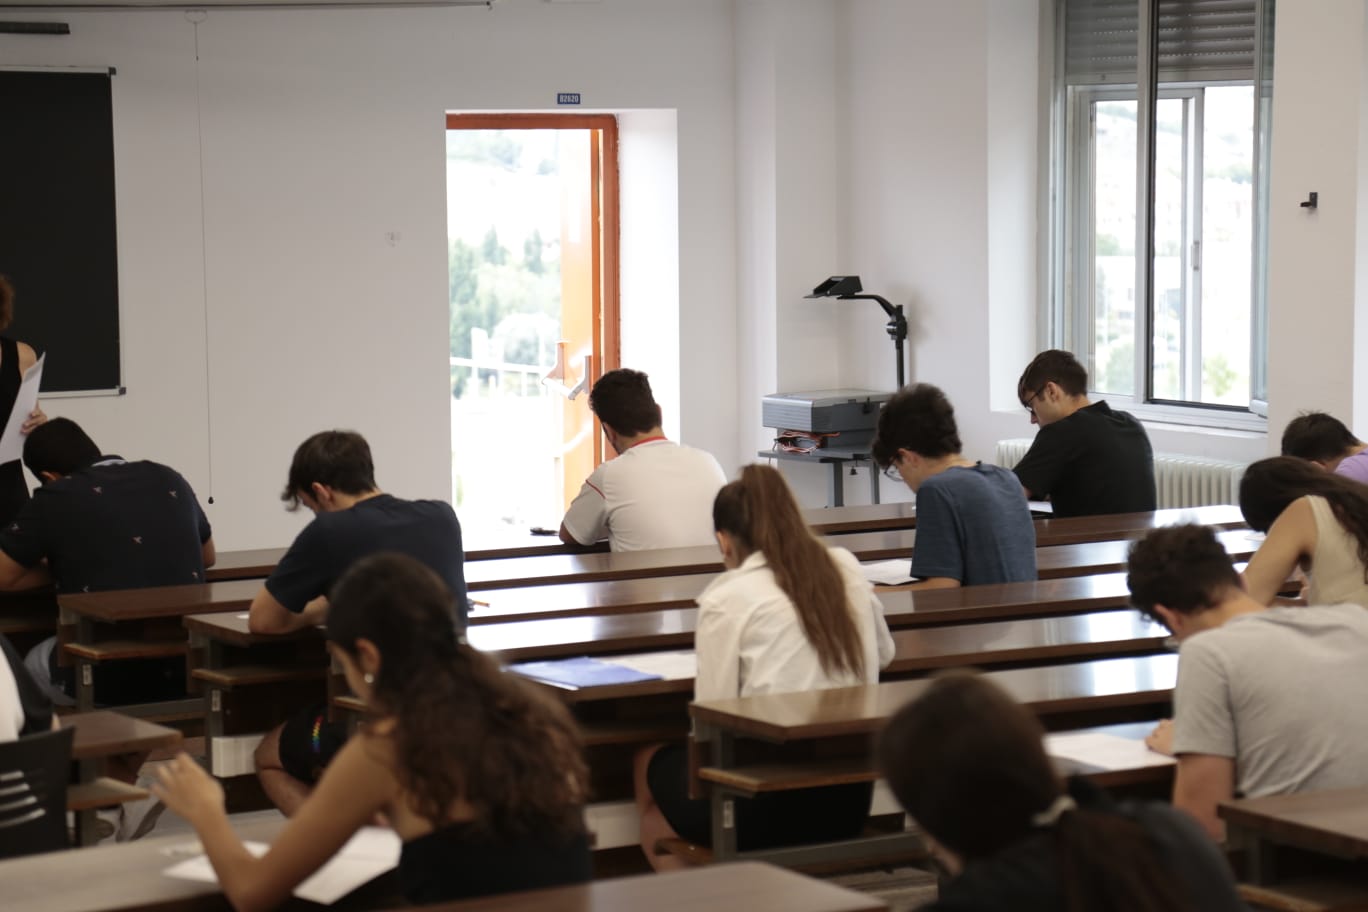 Convocatoria extraordinaria de la EBAU en el distrito universitario de Salamanca